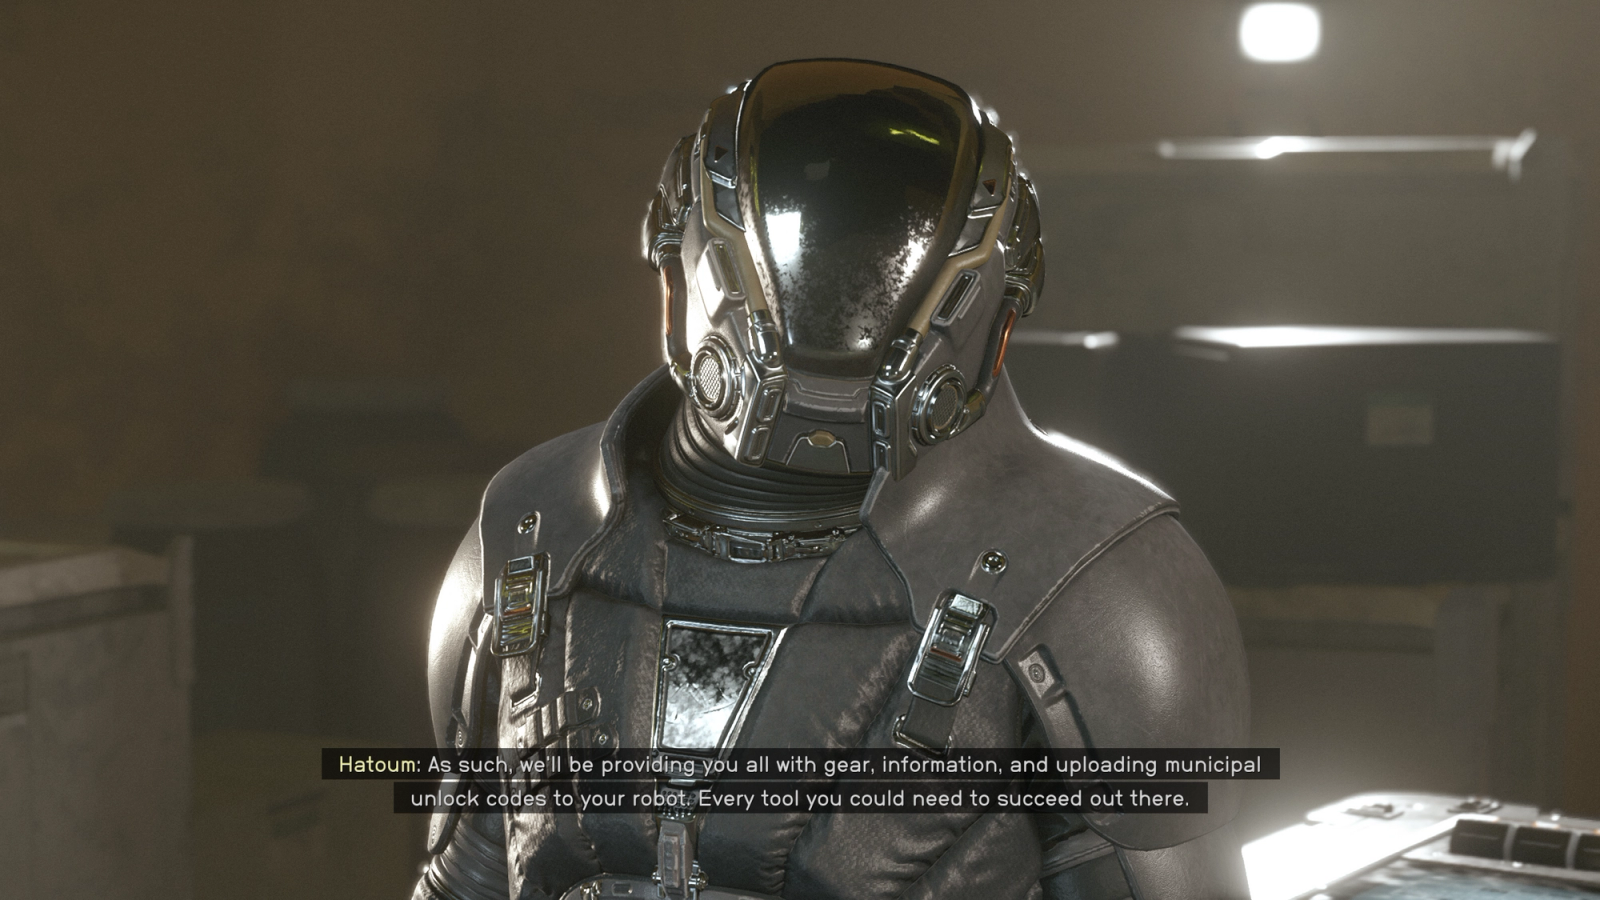 Starfield Hostile Intelligence speak with commander hatoum about supplies